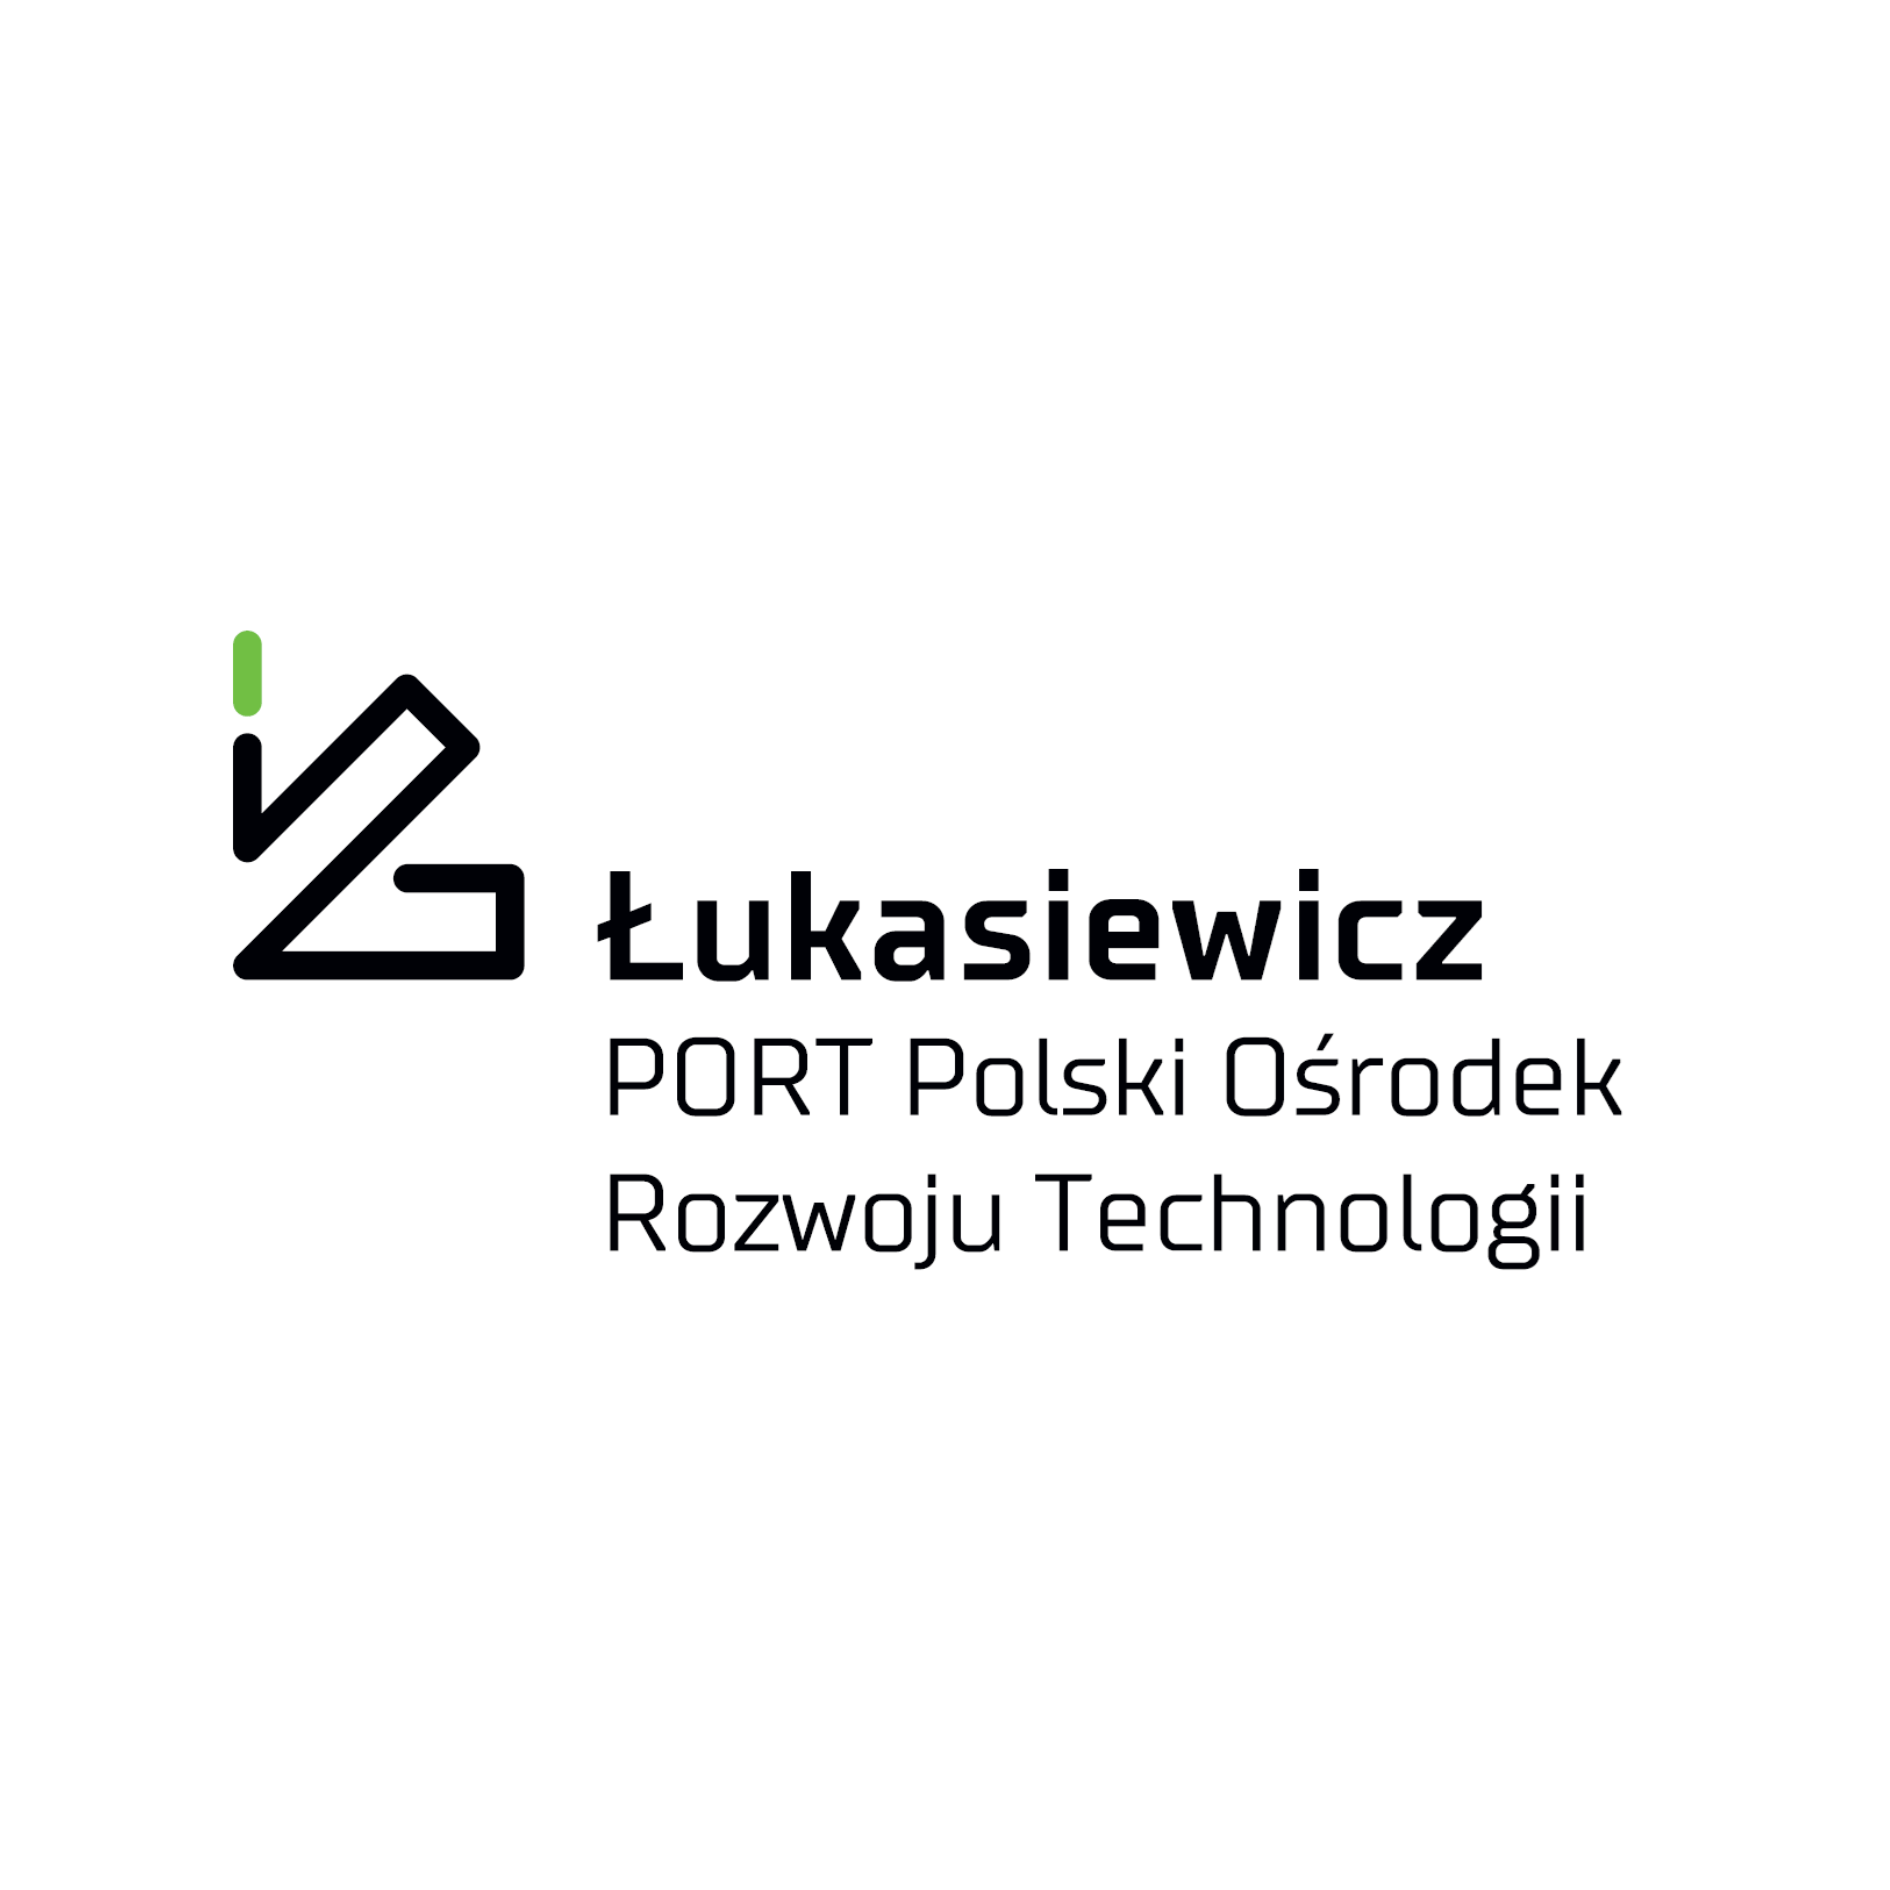 Łukasiewicz – PORT Polski Ośrodek Rozwoju Technologii 